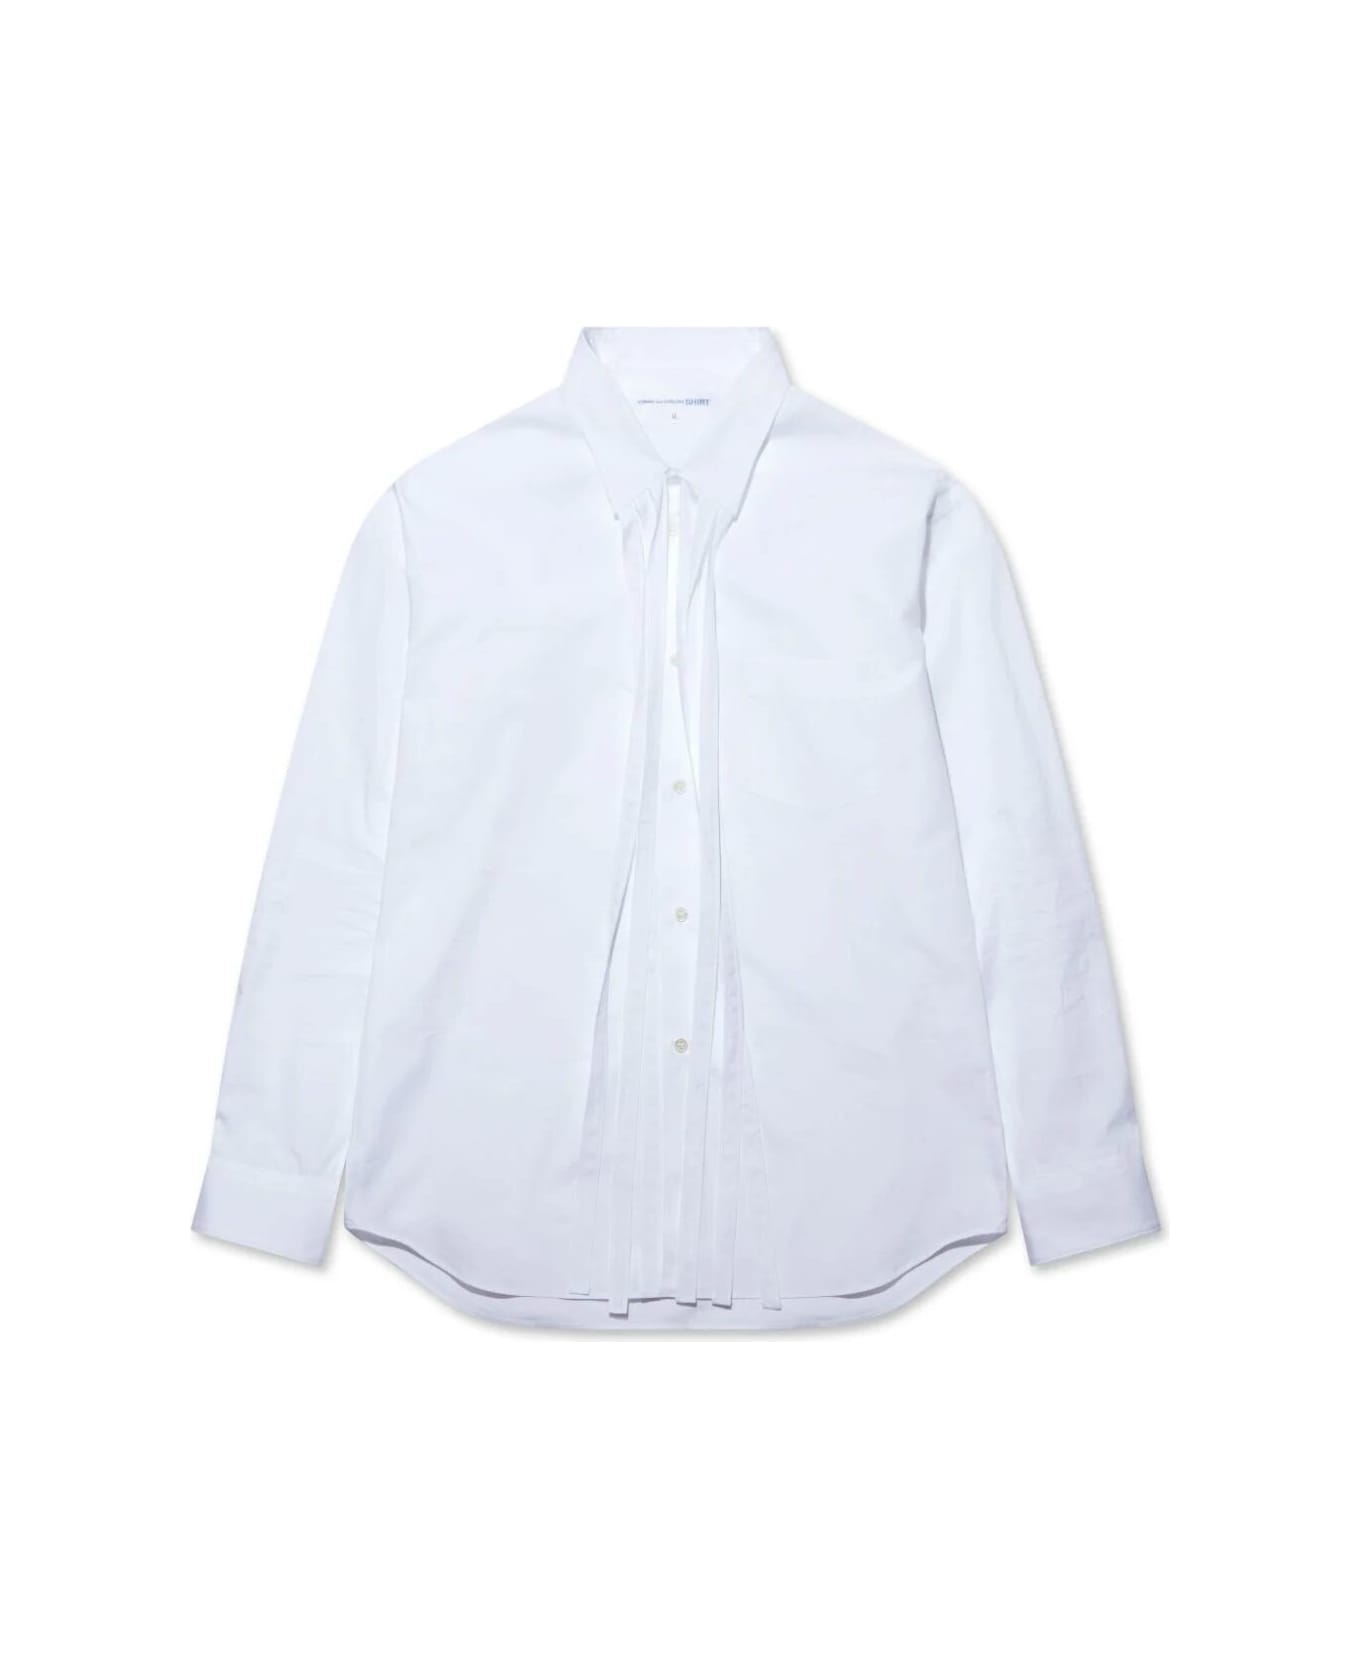 Comme des Garçons Shirt Mens Shirt Woven - White シャツ